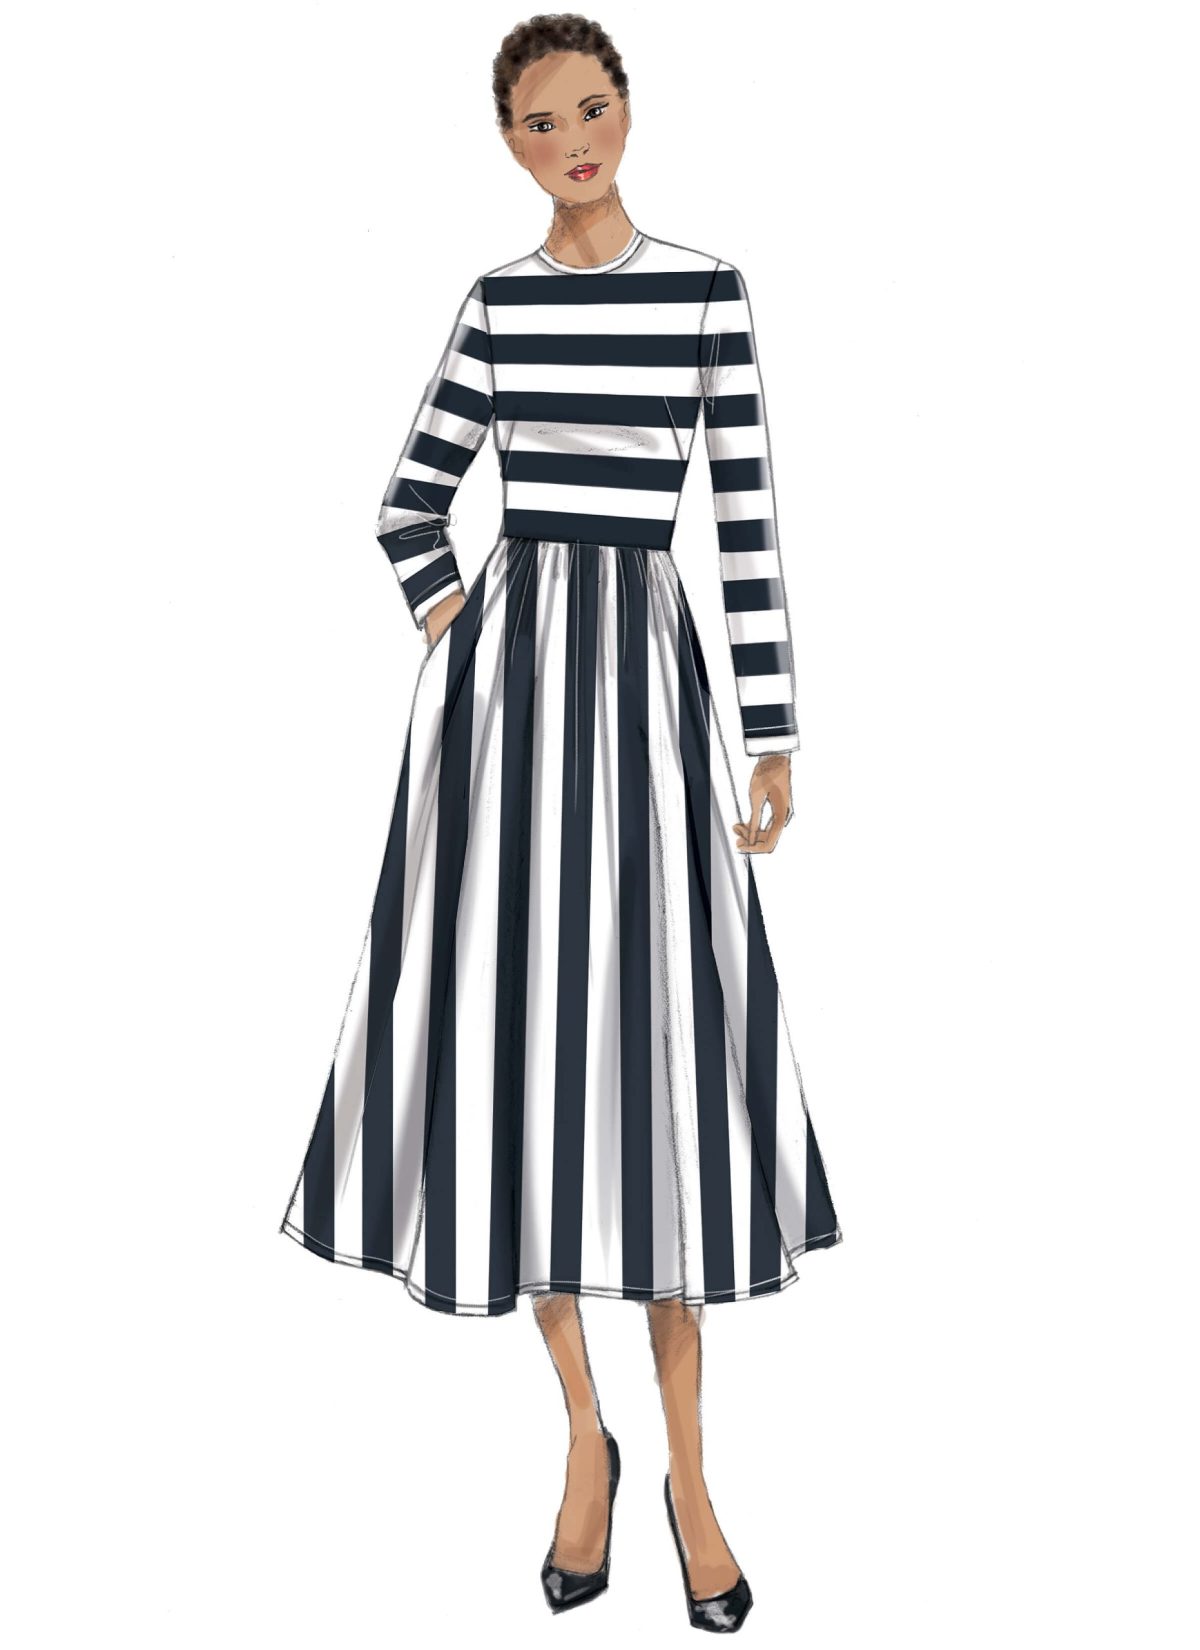 Vogue Patterns V9197 Misses' Jewel-Neck, Gathered-Skirt Dresses